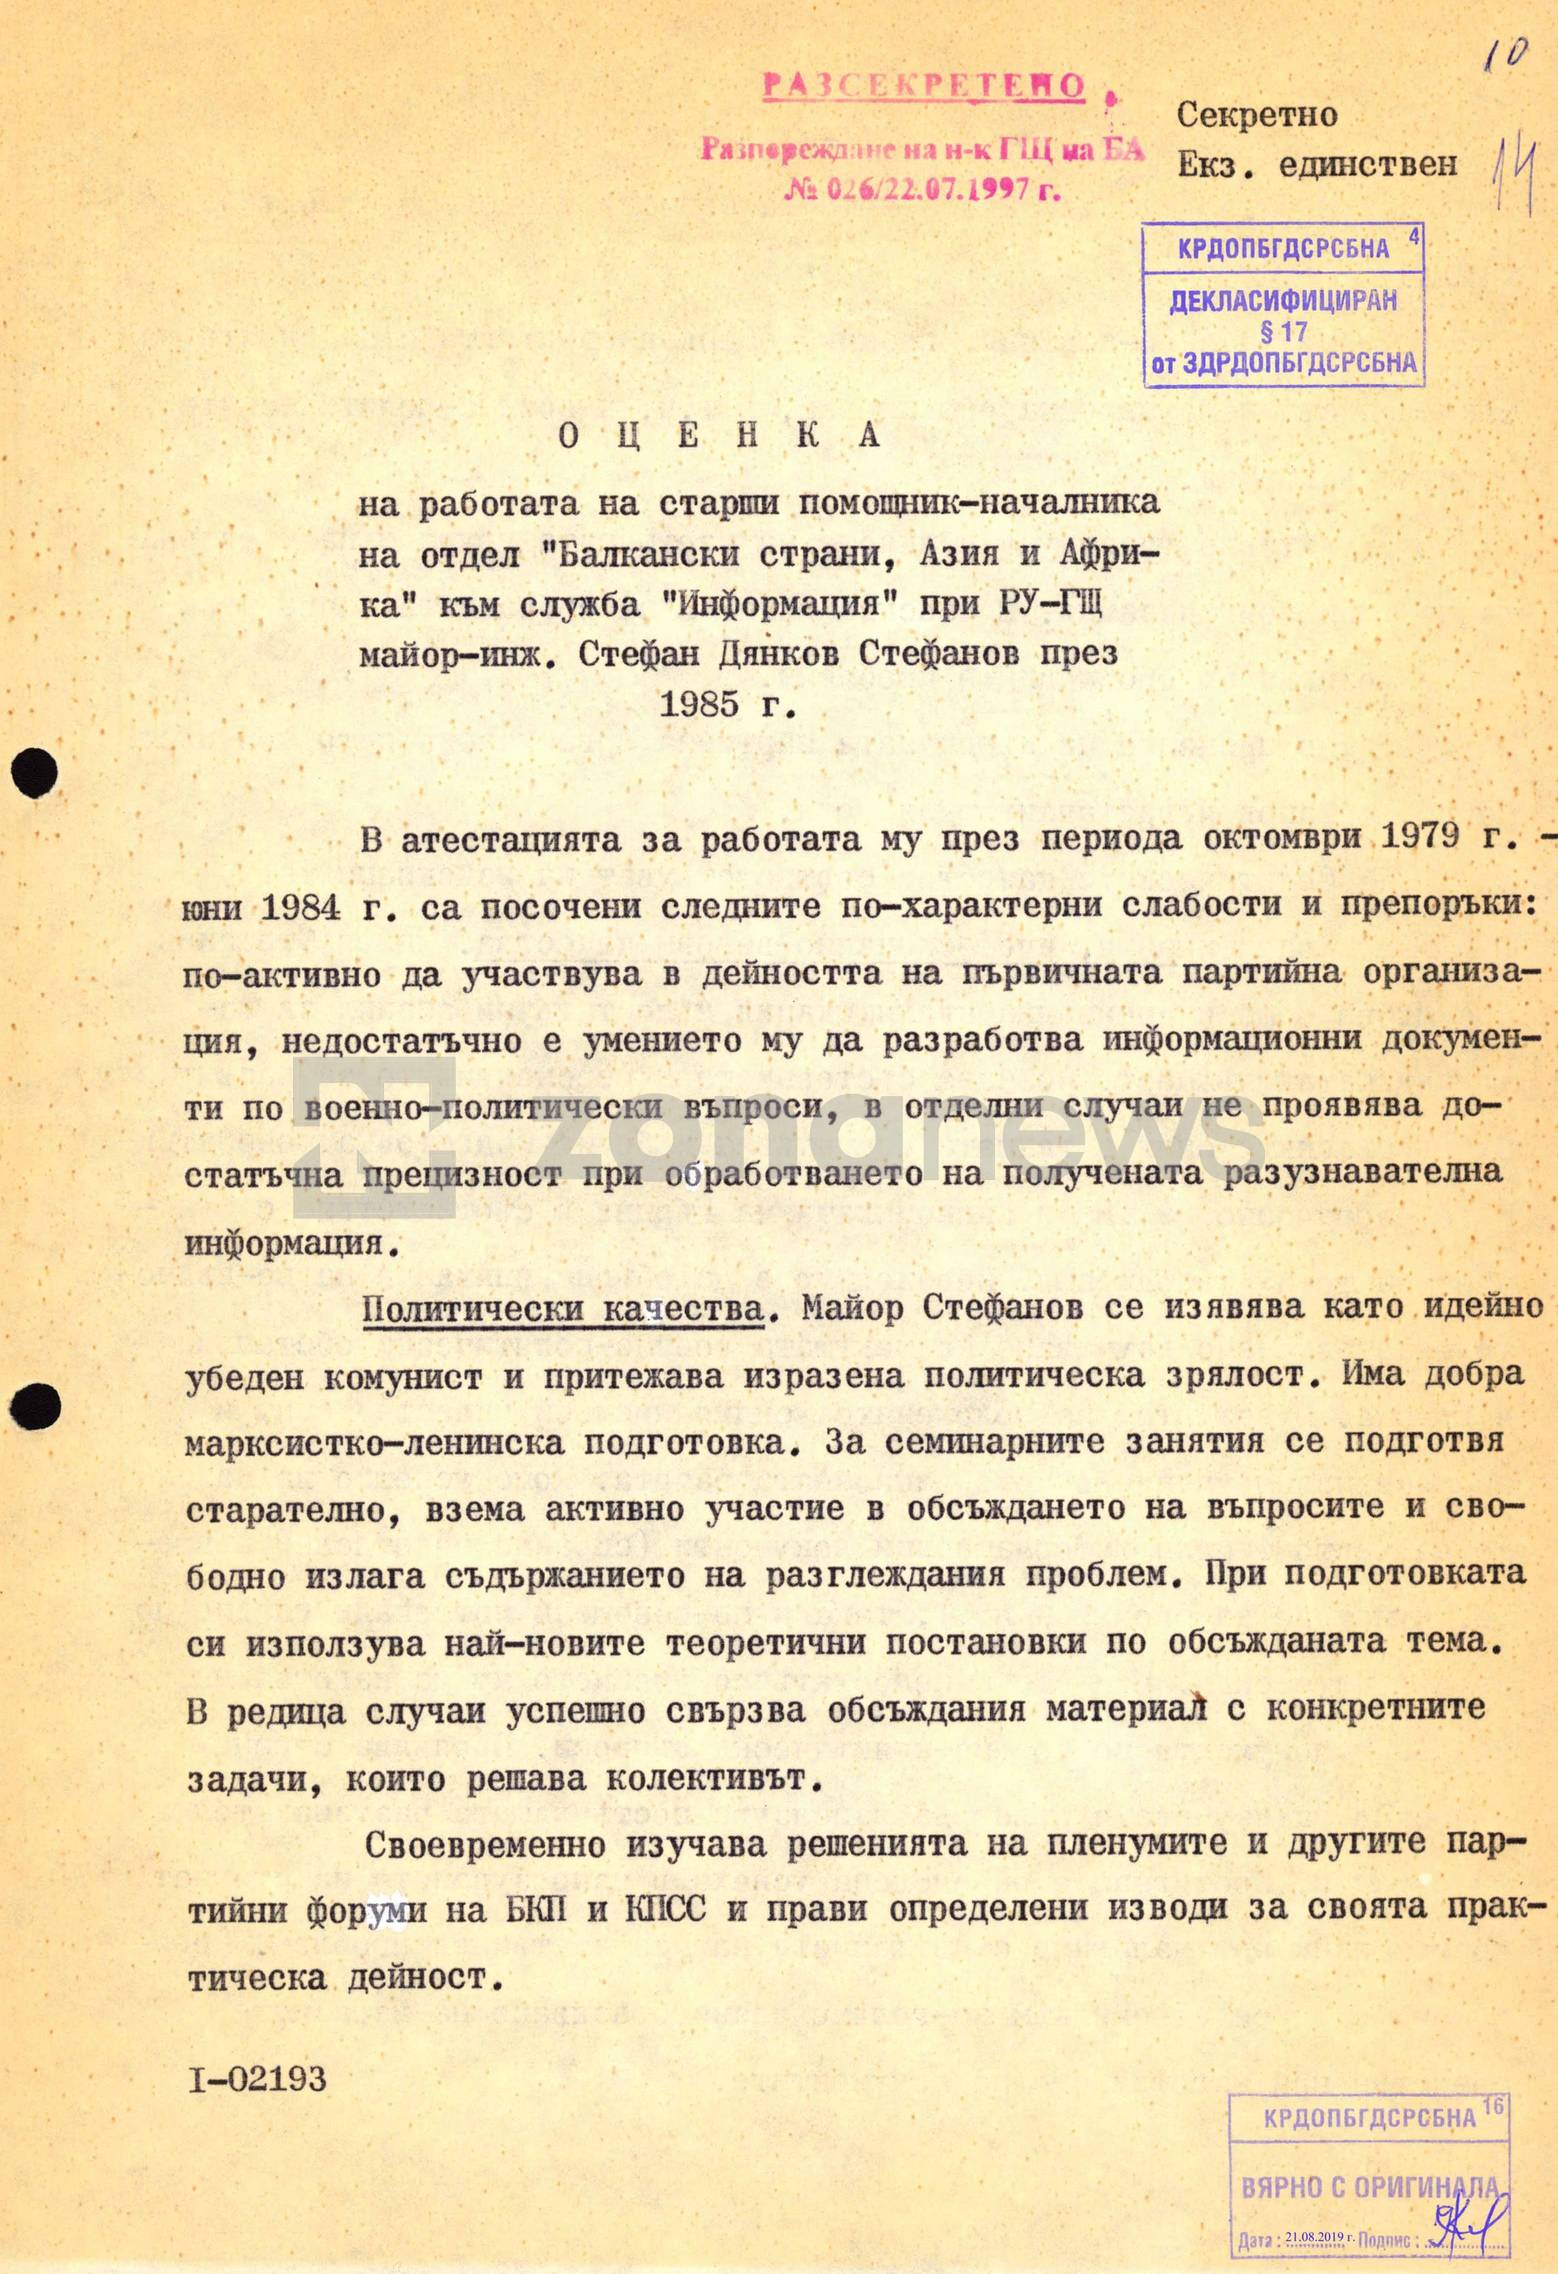 Оценка за работата на Стефан Дянков Стефанов в РУ-ГЩ за 1985 г.